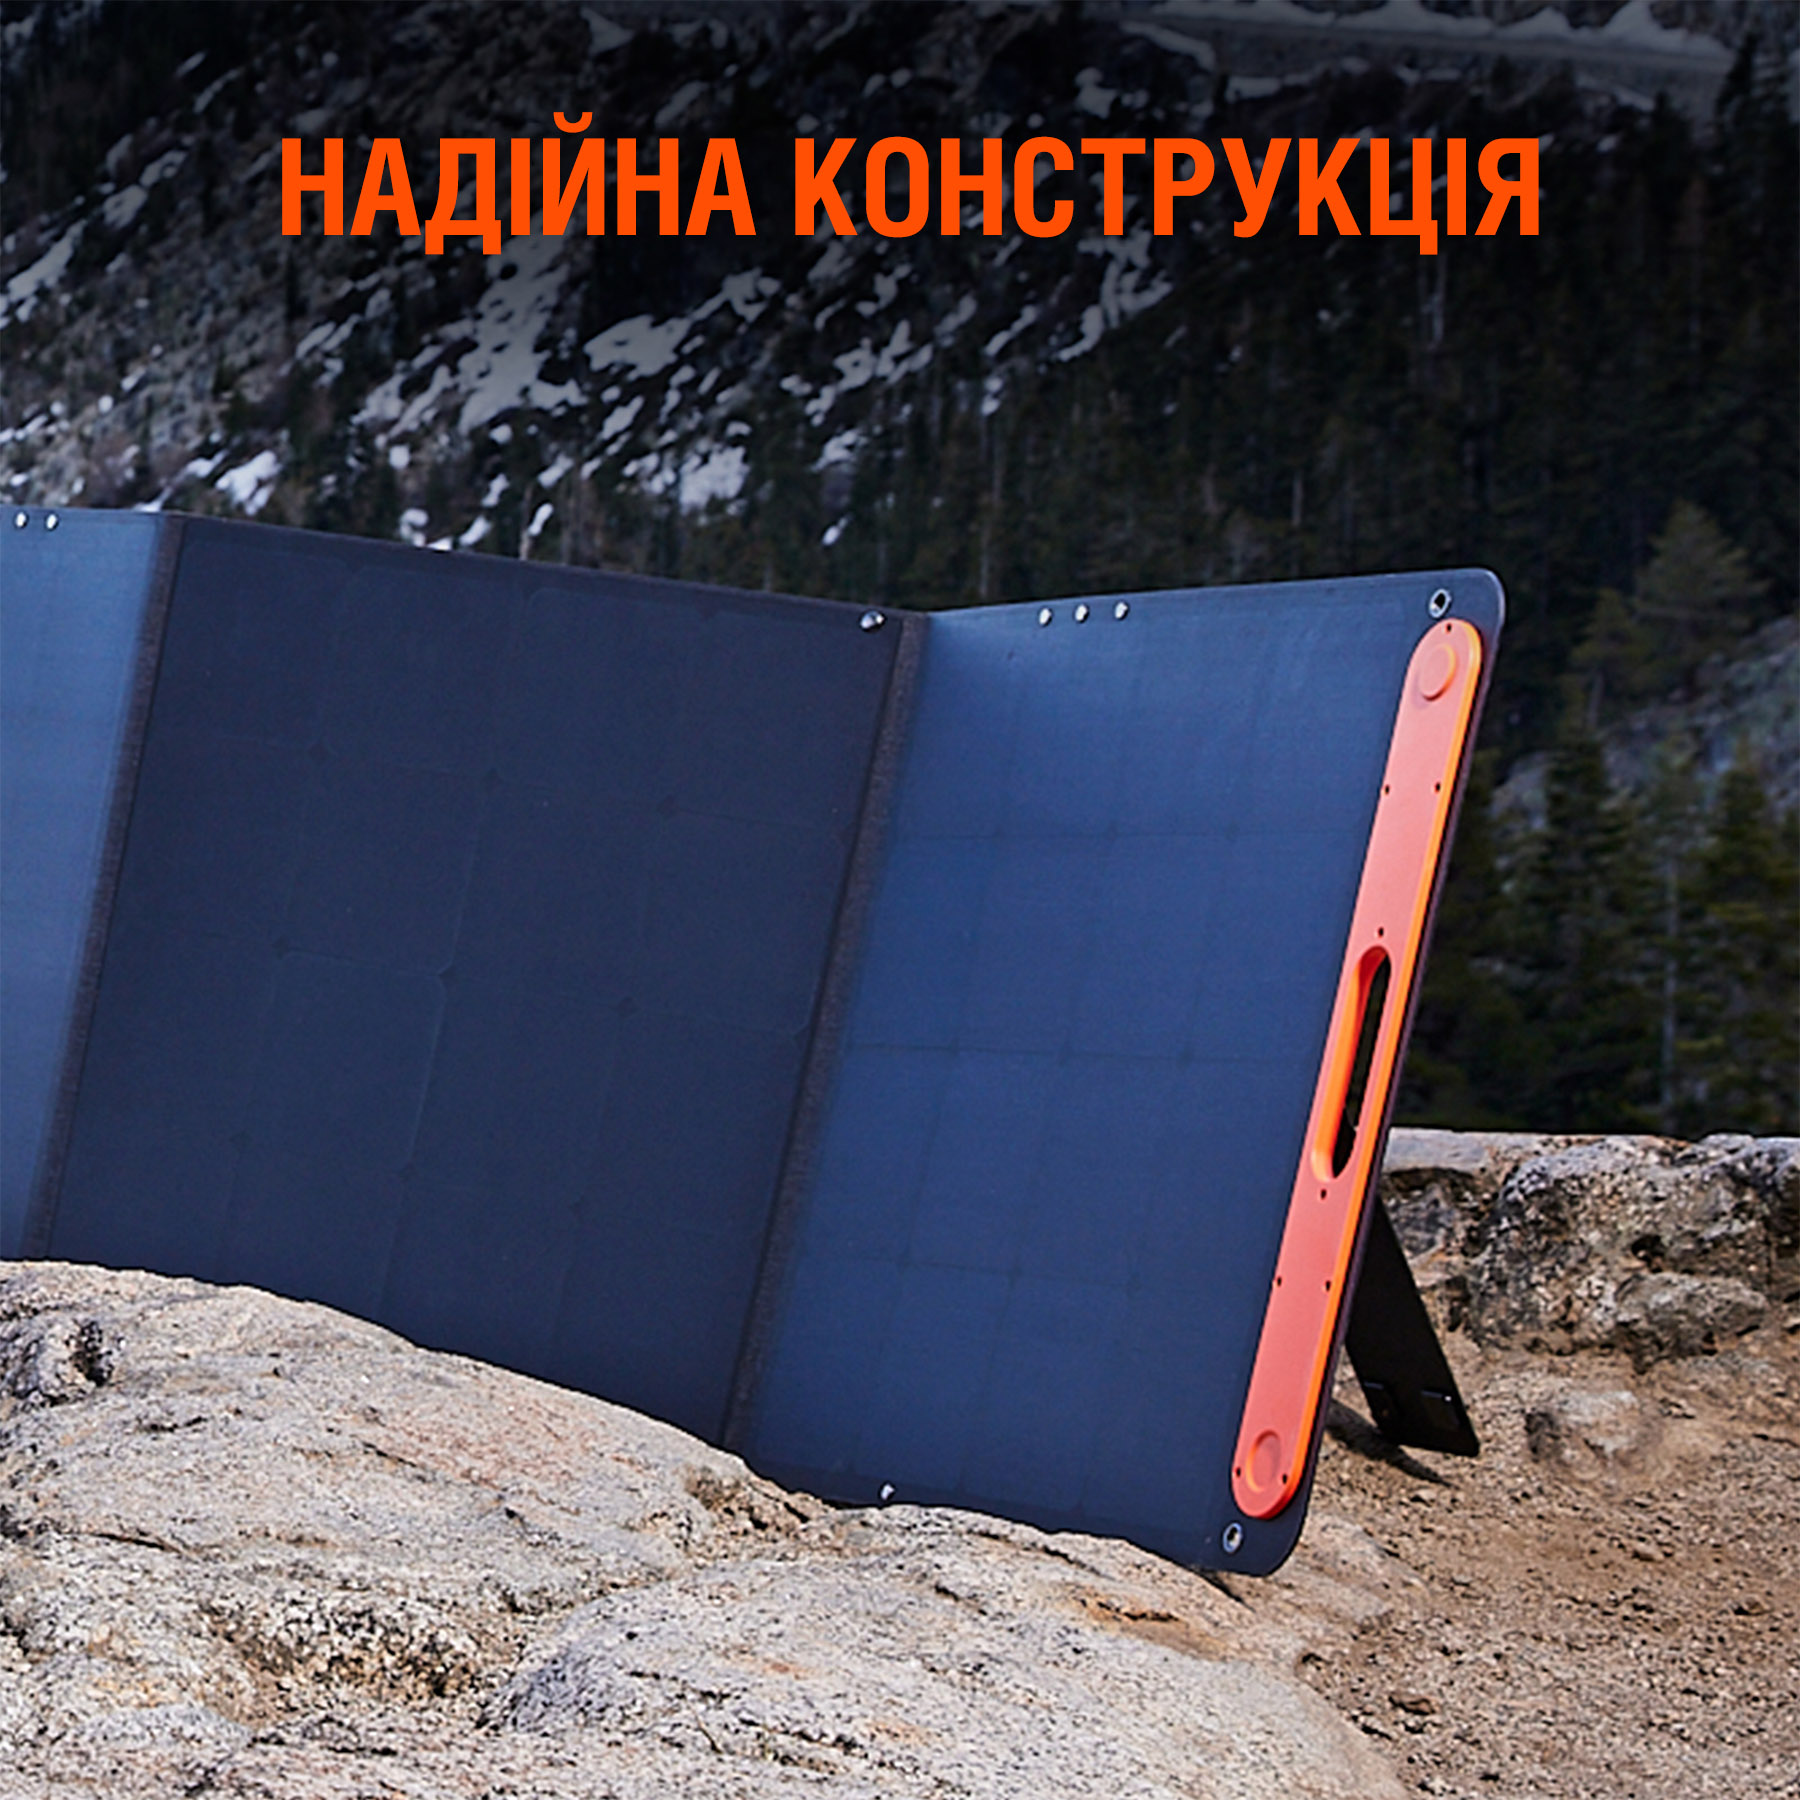 Портативная солнечная батарея Jackery SolarSaga 200W отзывы - изображения 5